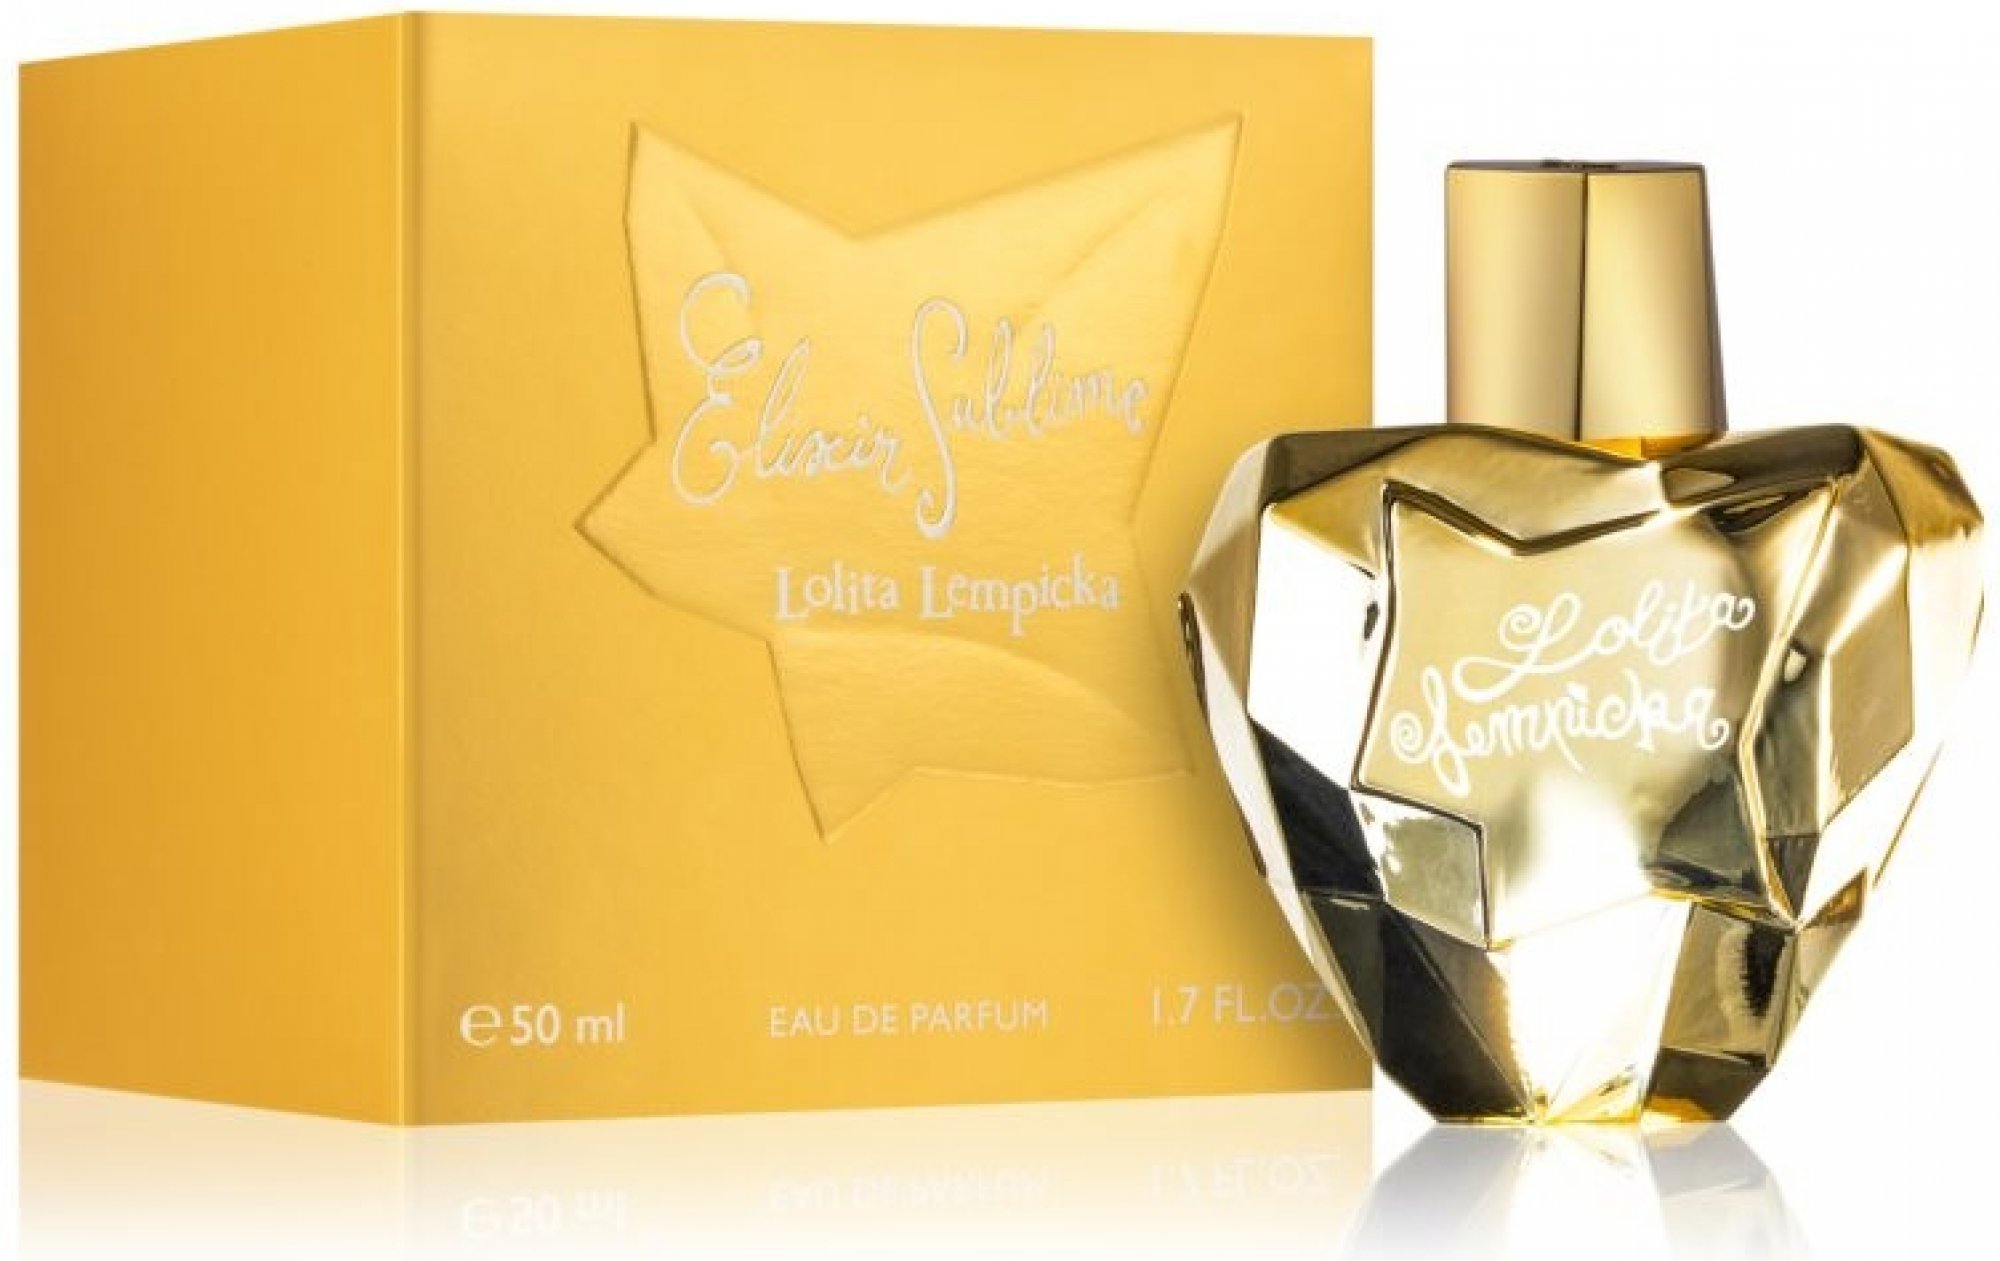 Lolita Lempicka Elixir Sublime edp 50ml